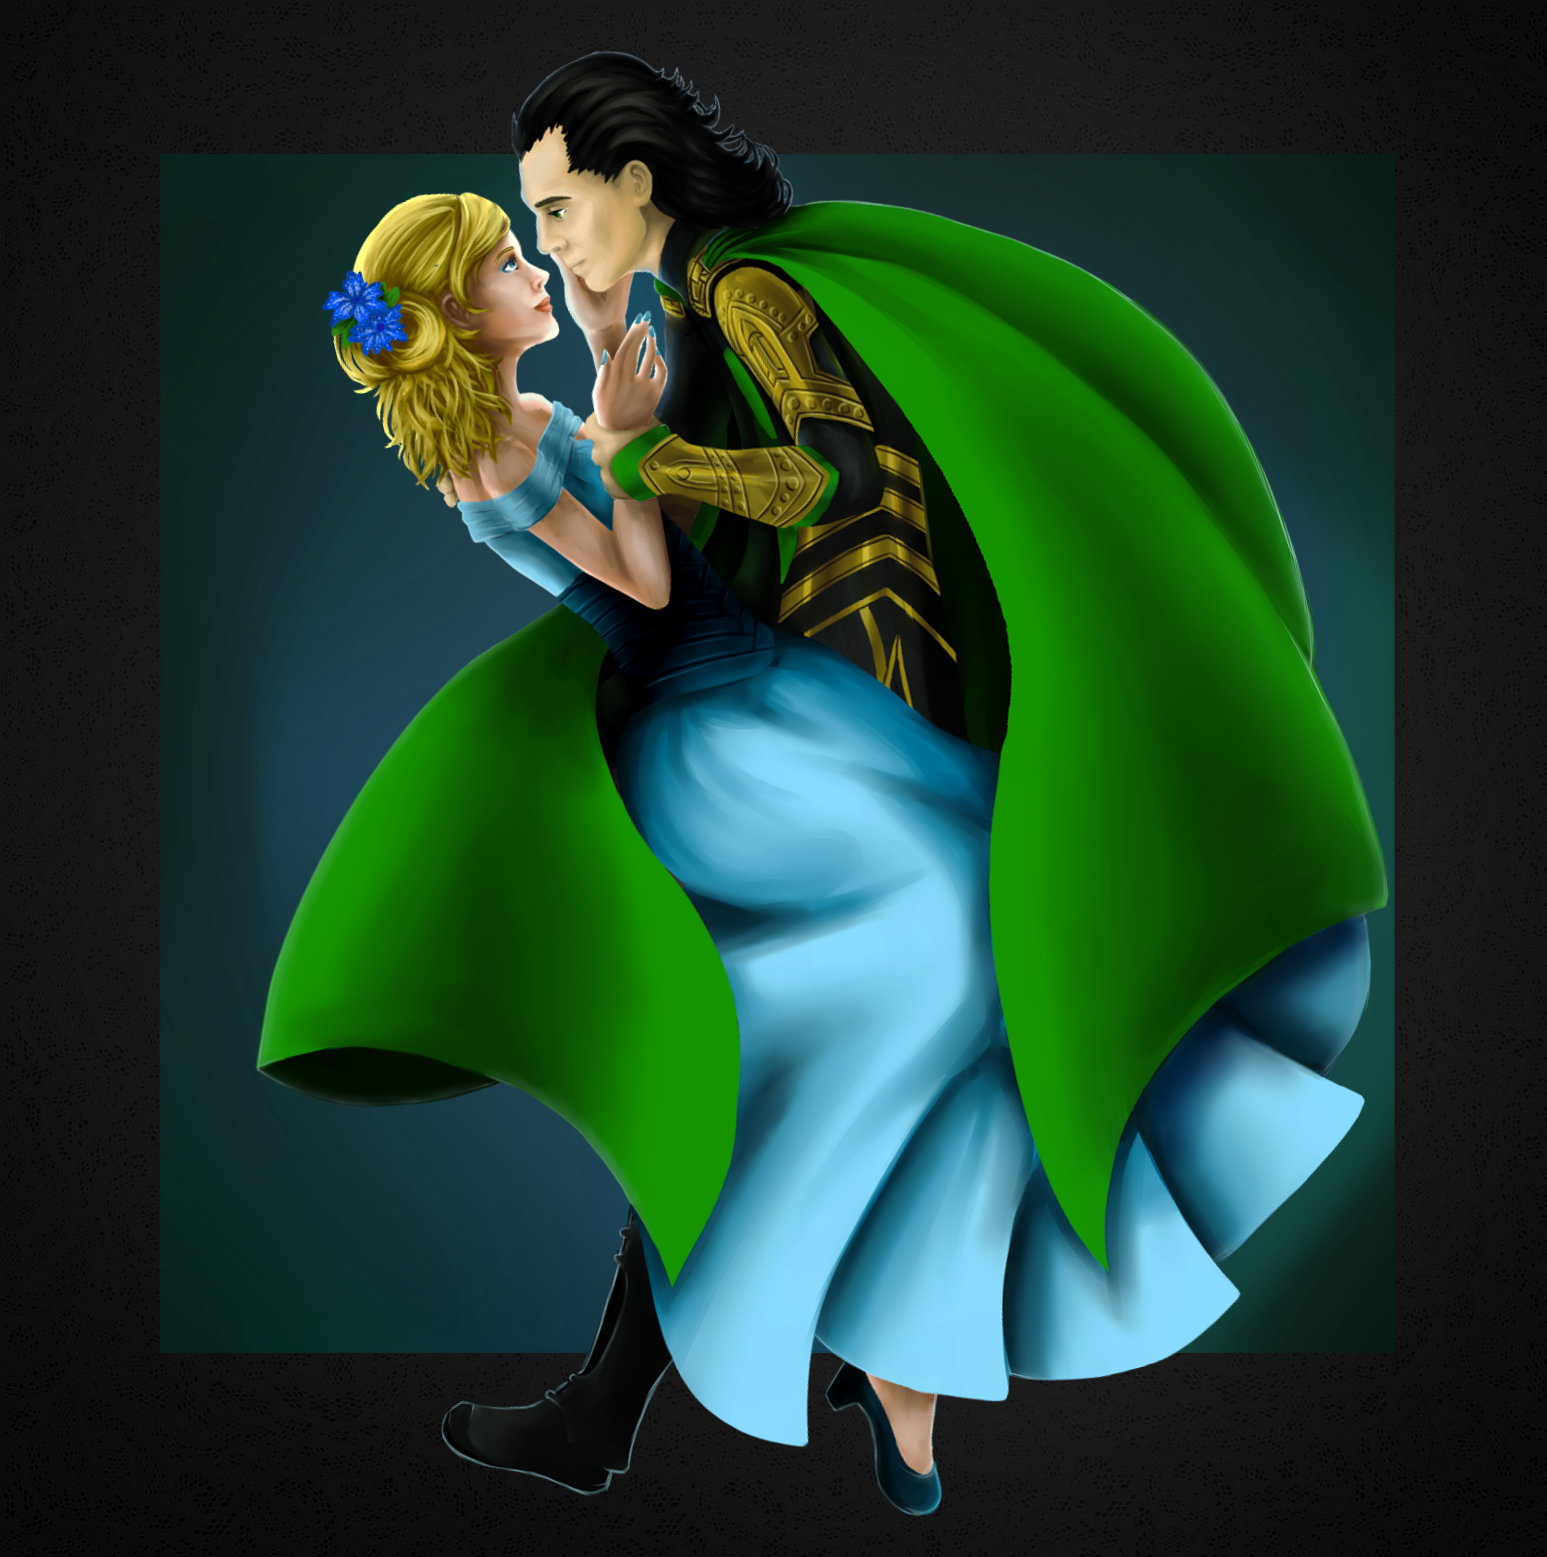 Loki - Marvel, Scandinavian mythology, Art, Fan art, My, Loki